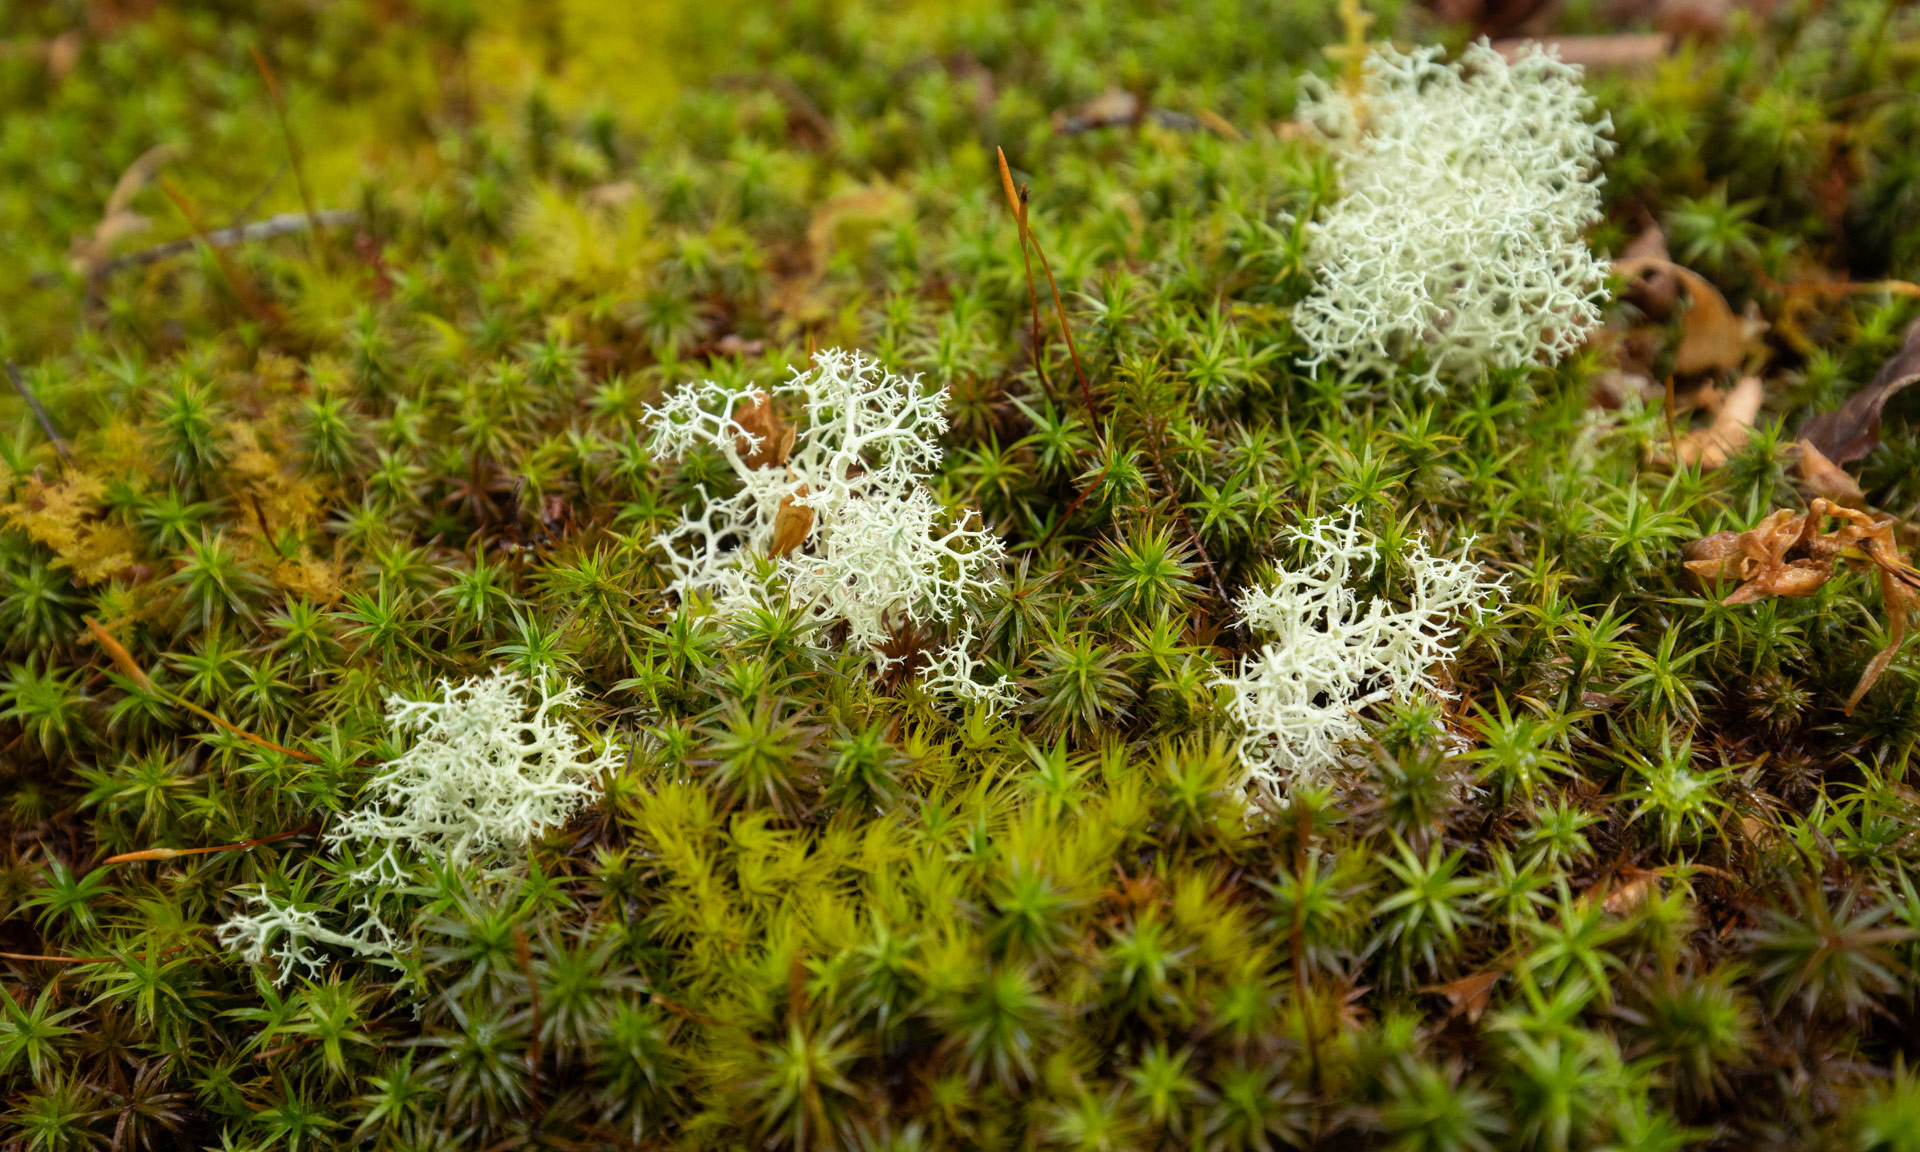 Lichen in Llennyrch wood